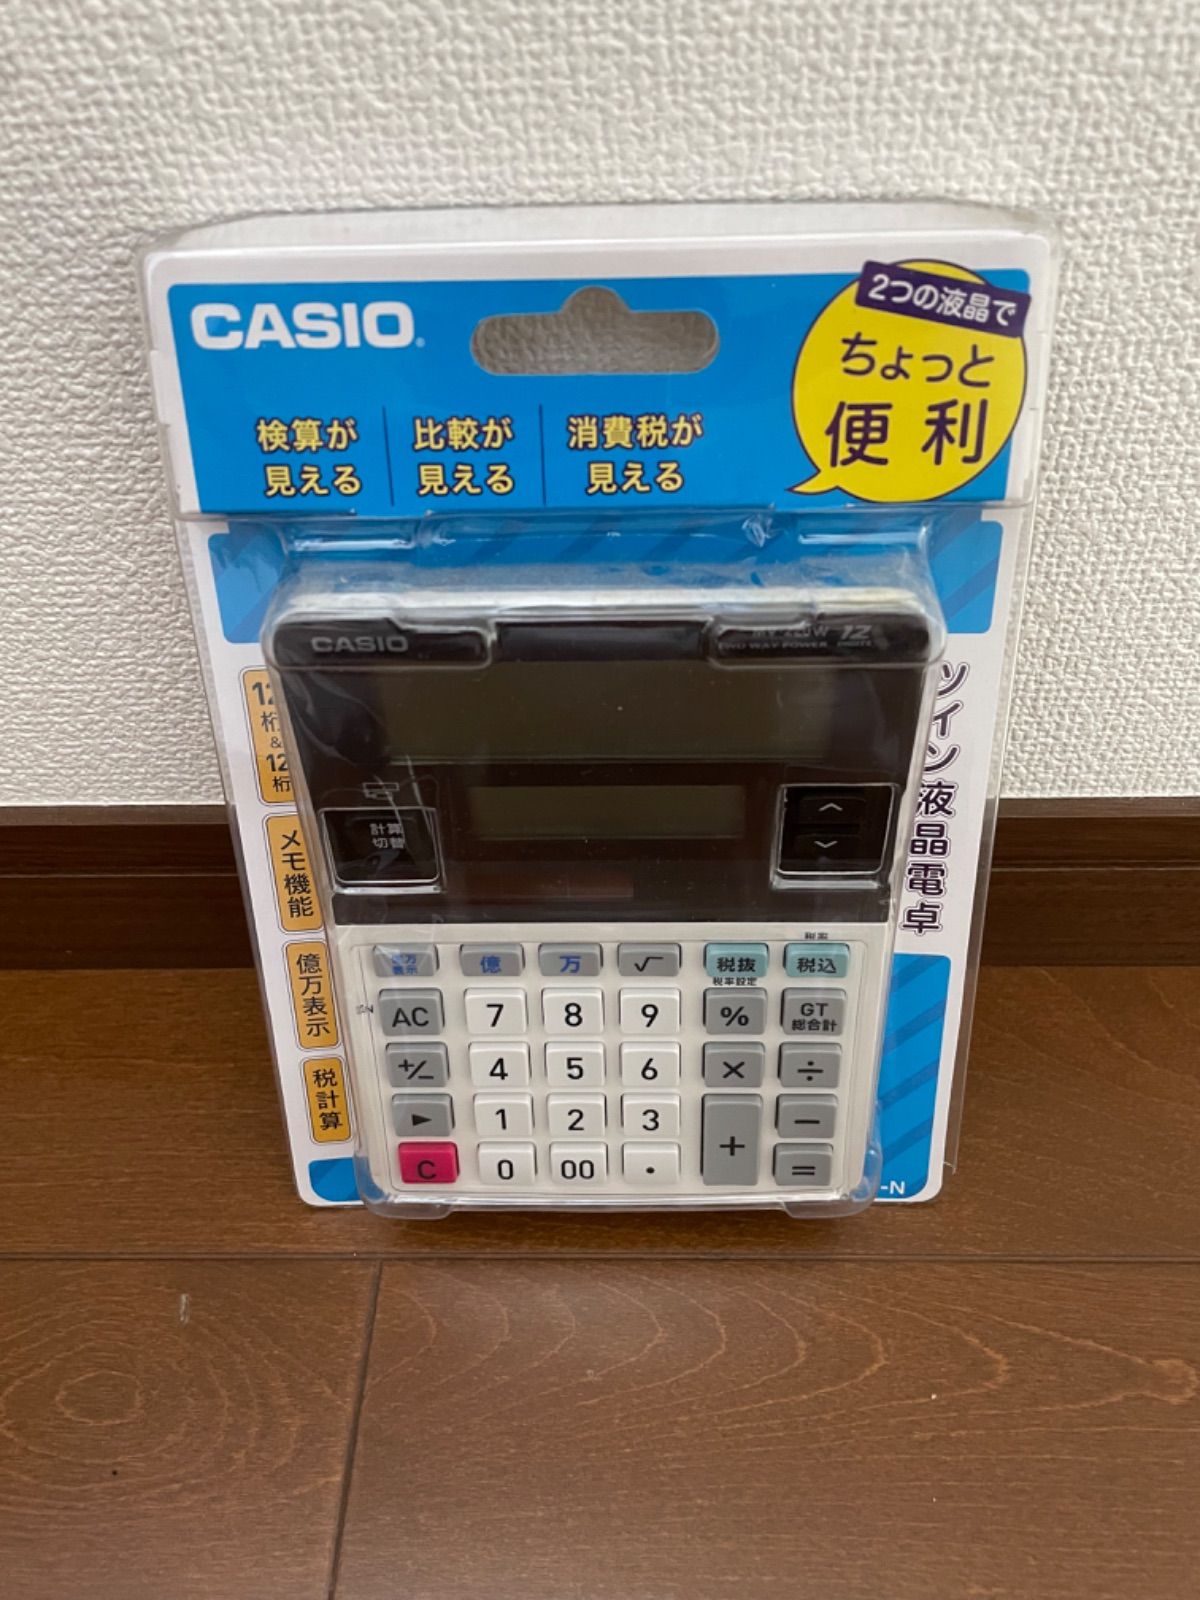 カシオ ツイン液晶電卓 ミニジャストタイプ 12桁 MV-220W-N